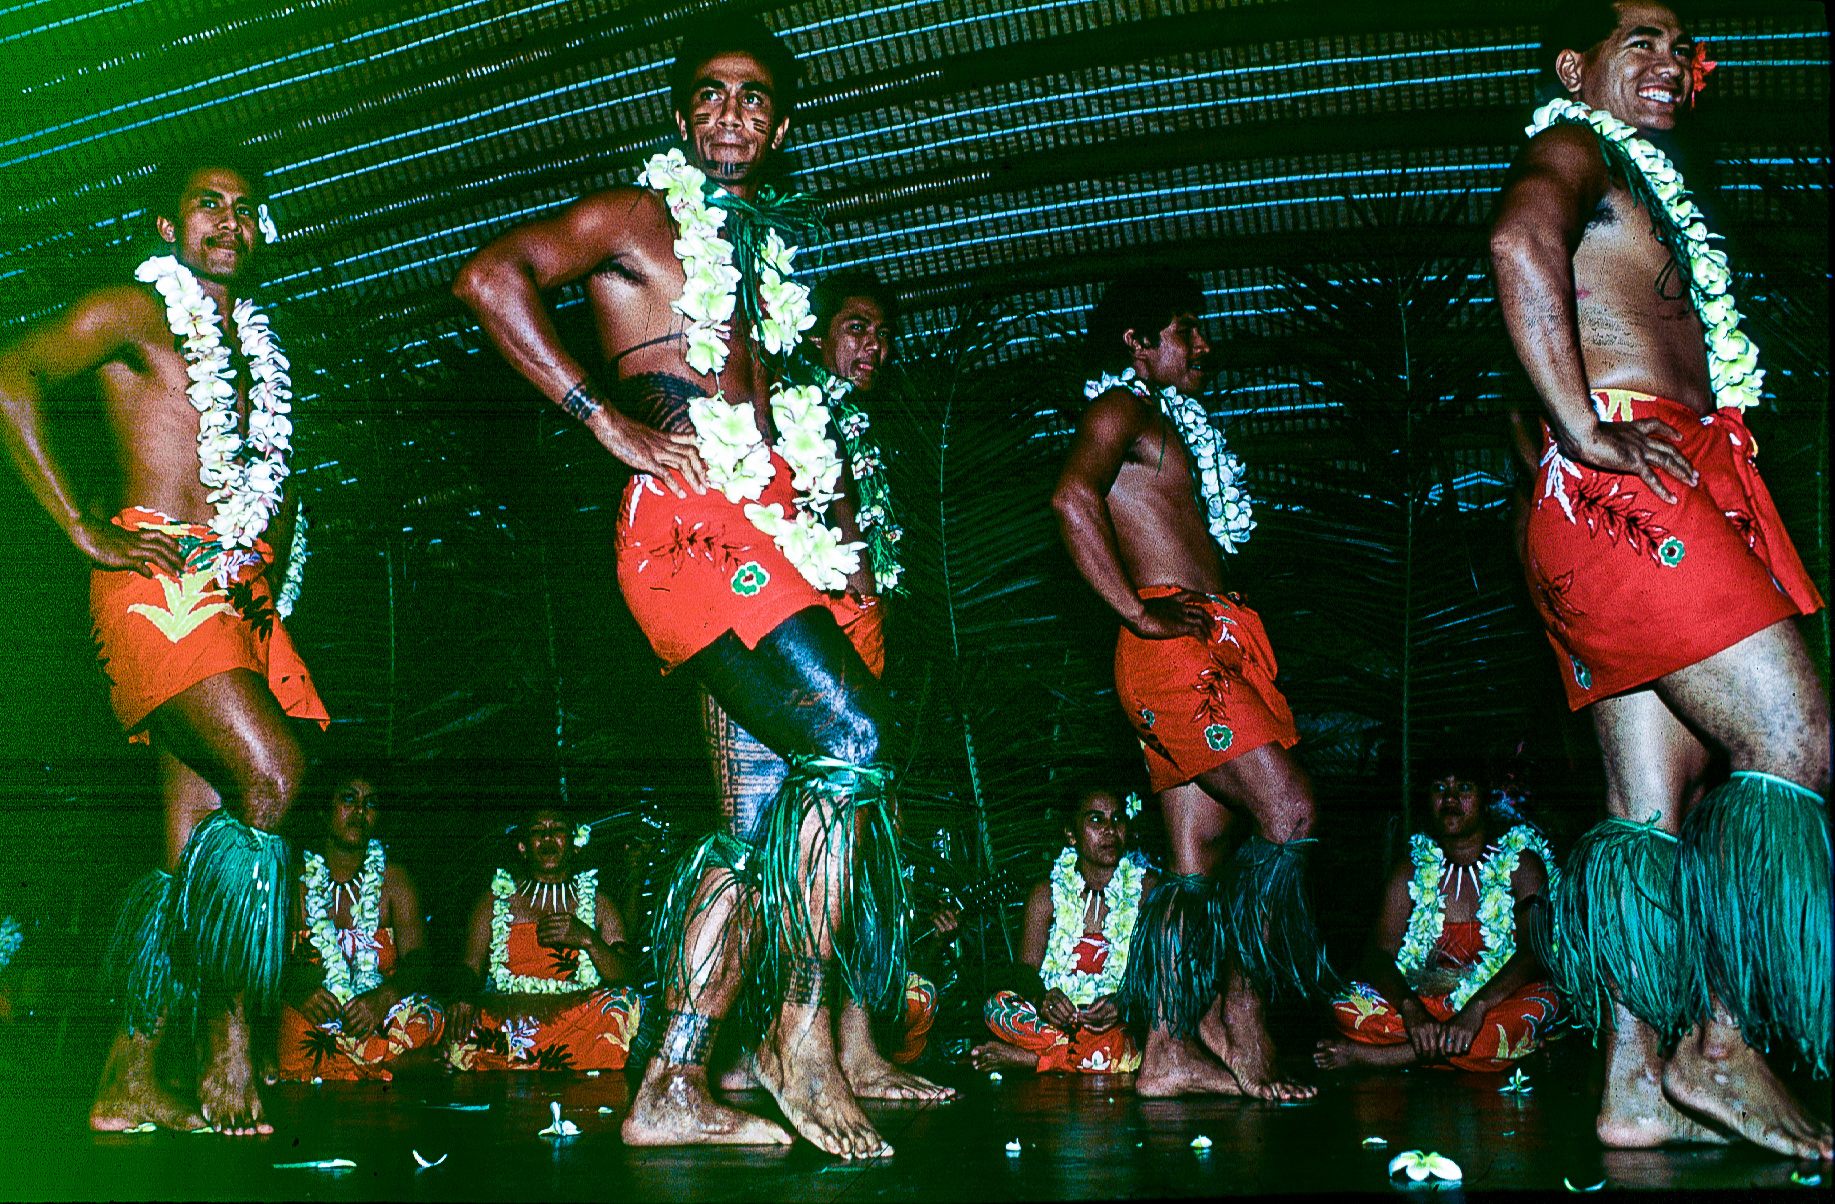 Danseurs samoans dont les corps sont recouverts de tatouages tradionnels.